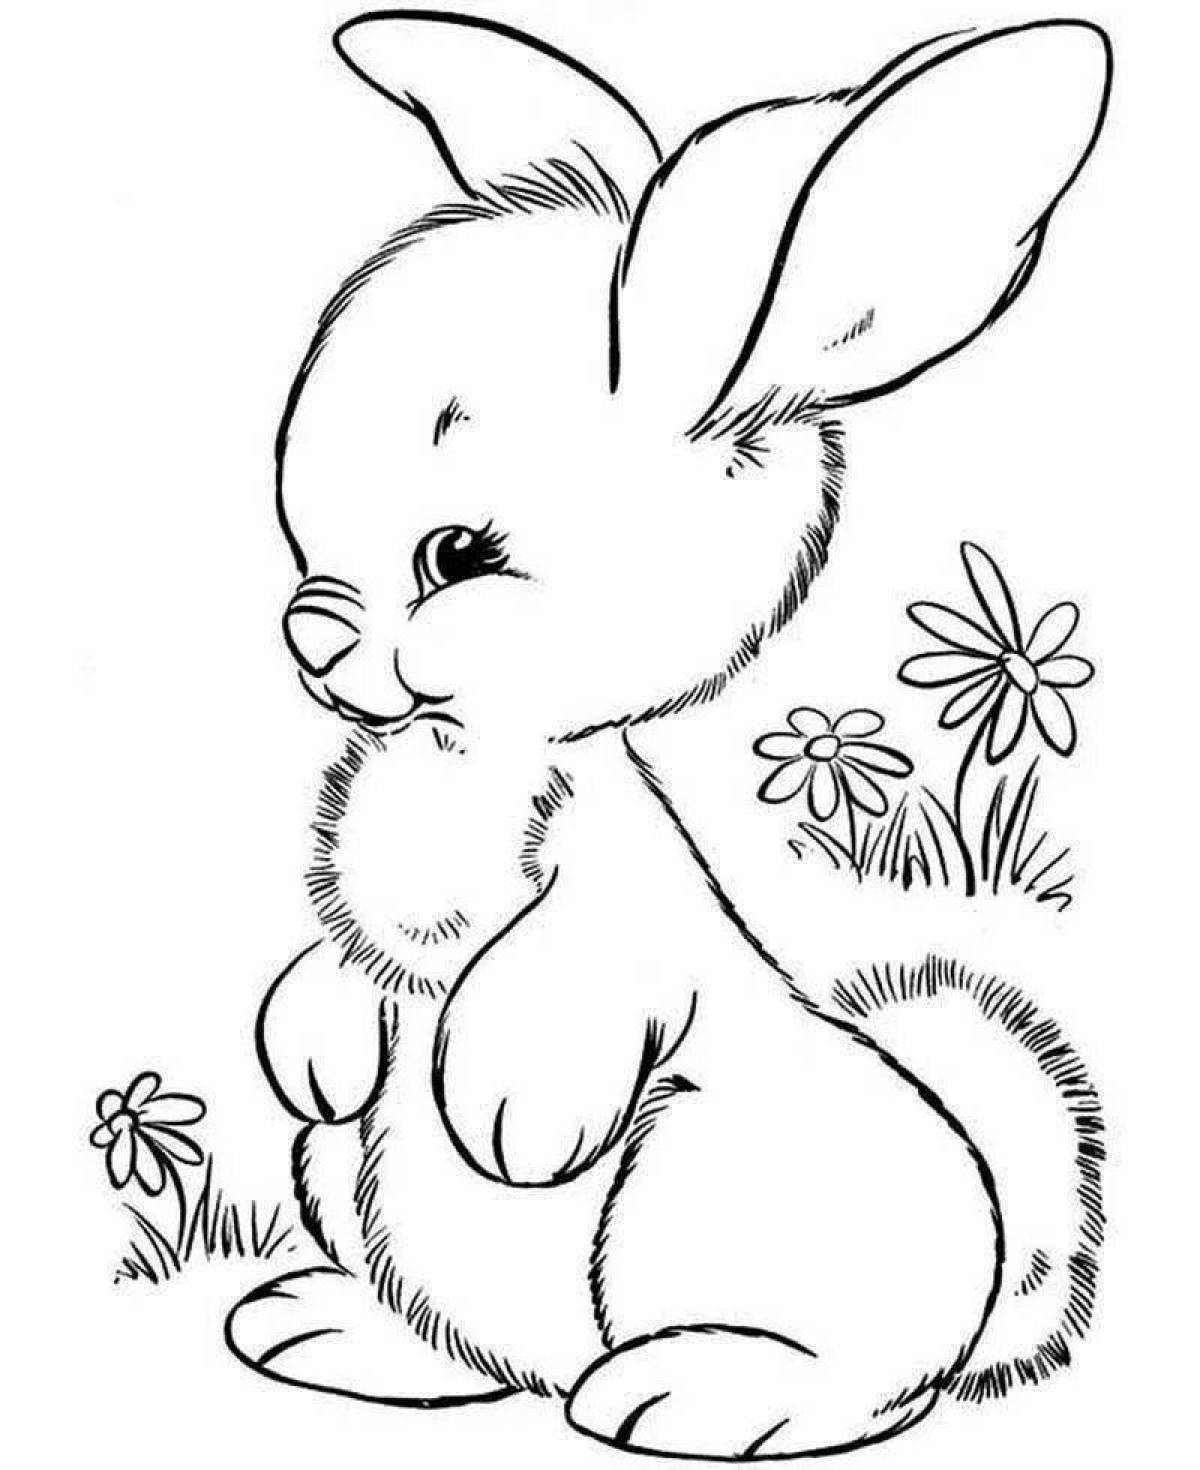 Увлекательный рисунок зайца